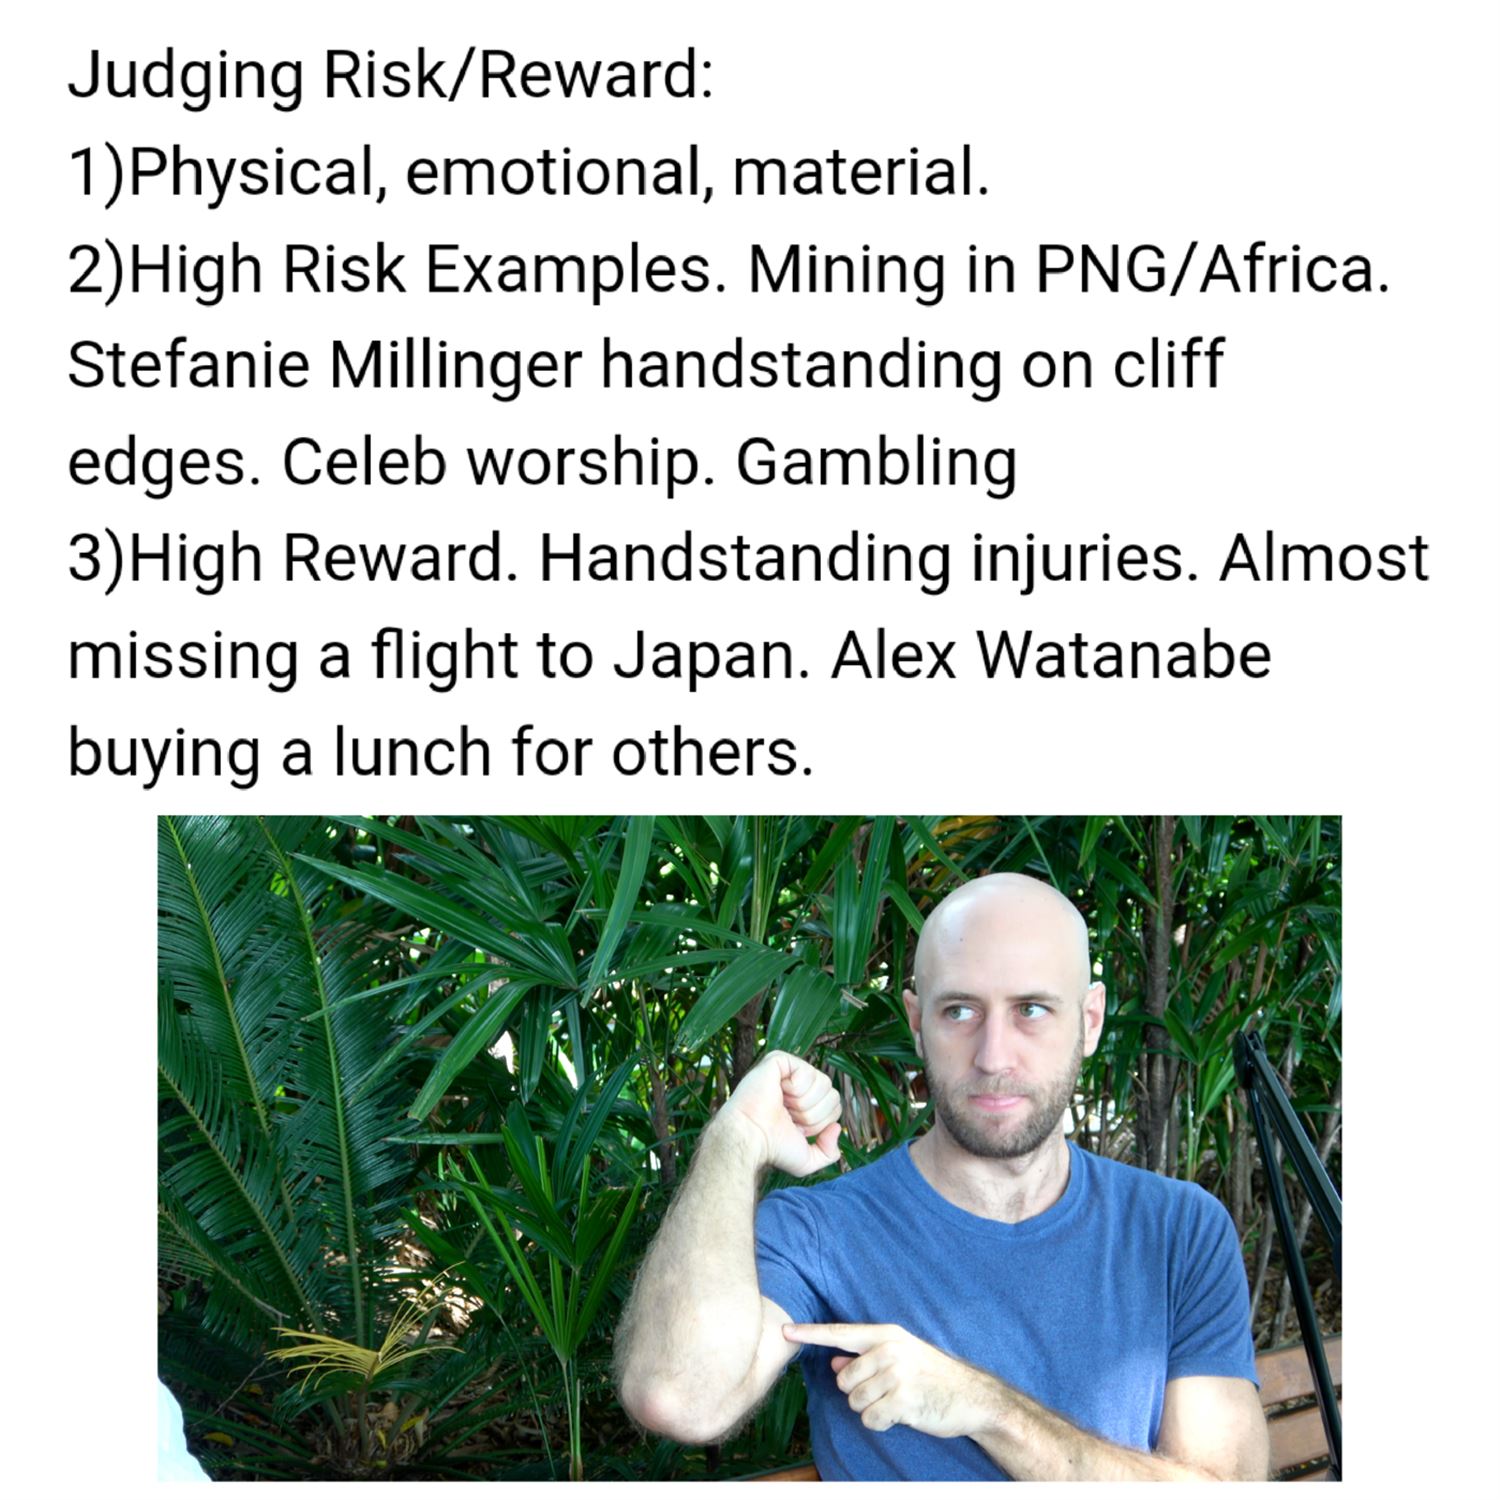 Judging risk/reward